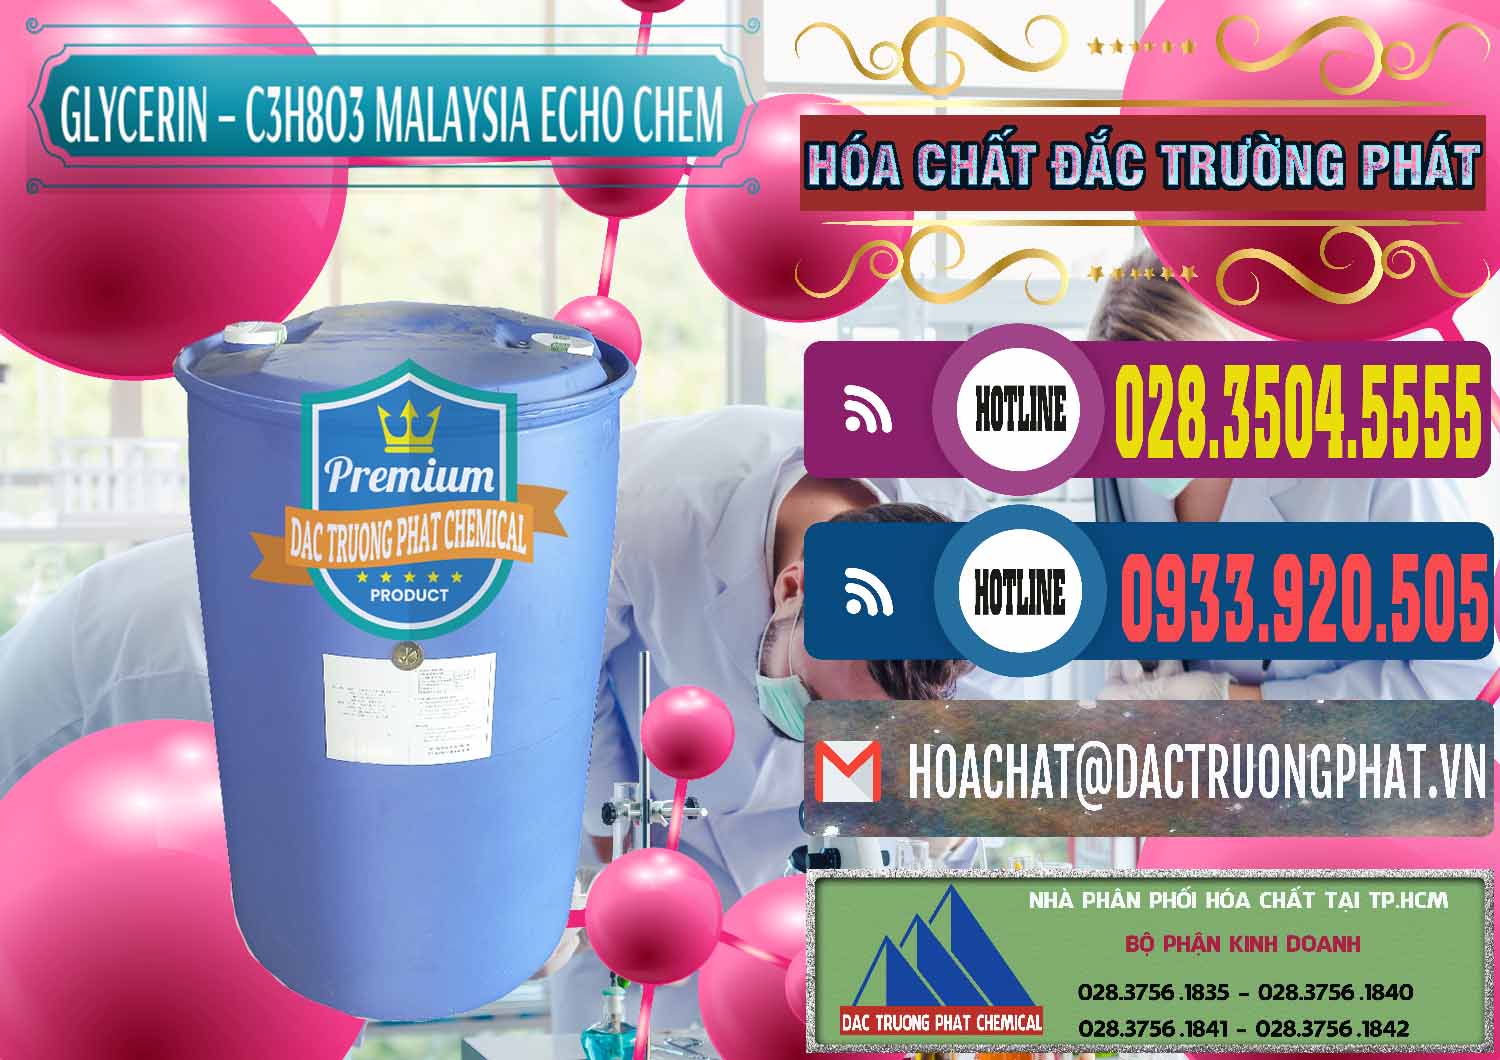 Phân phối & bán C3H8O3 - Glycerin 99.7% Echo Chem Malaysia - 0273 - Nơi phân phối ( cung cấp ) hóa chất tại TP.HCM - muabanhoachat.com.vn